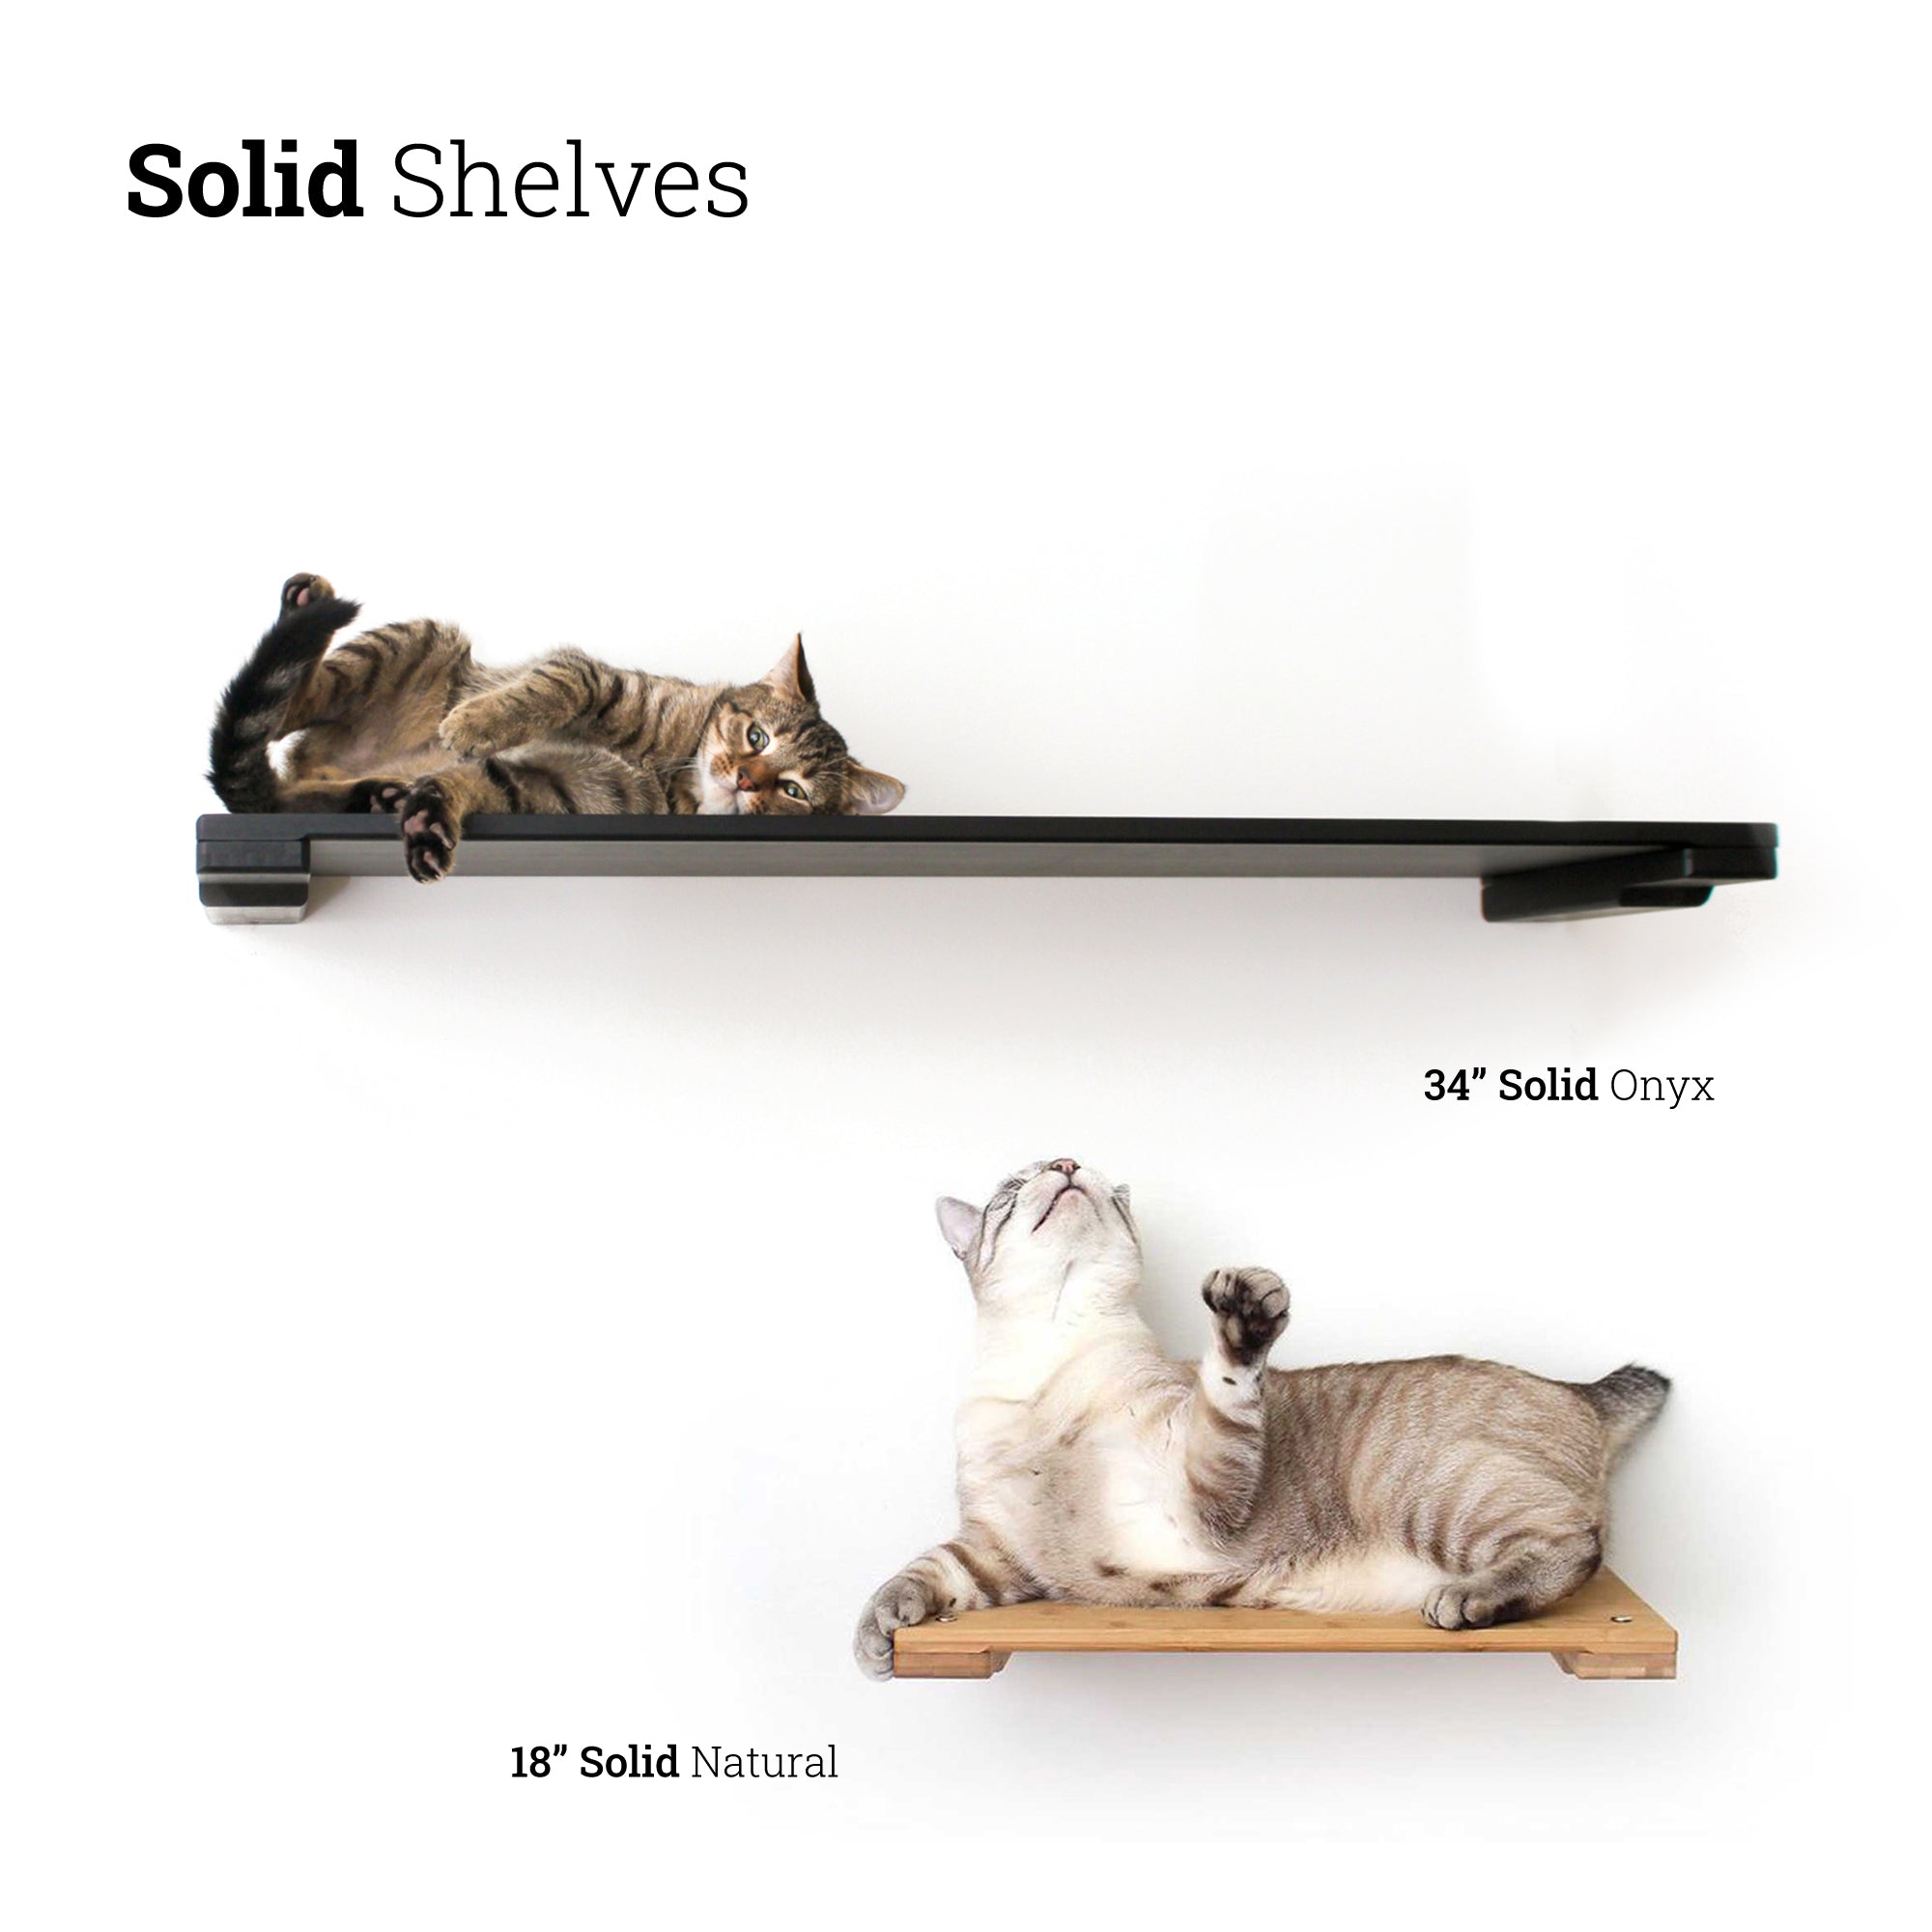 cats enjoying a 34" and 18" wall mounted cat shelf 